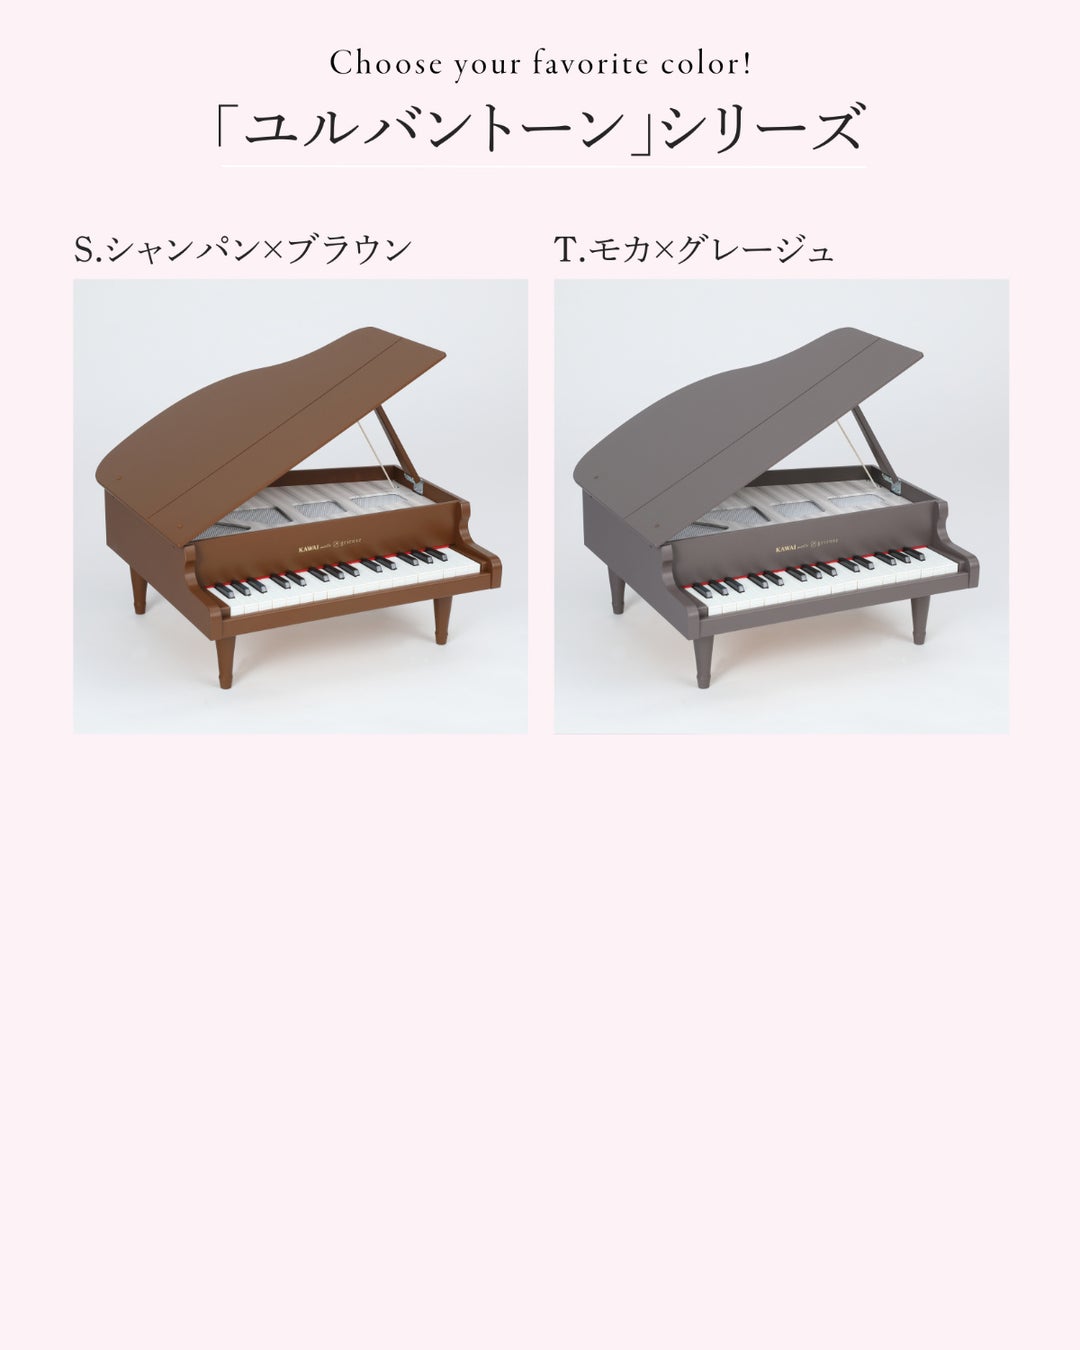 土屋鞄が展開する、もうひとつのランドセルブランド「grirose」、「KAWAIミニピアノ」との初コラボレーション...